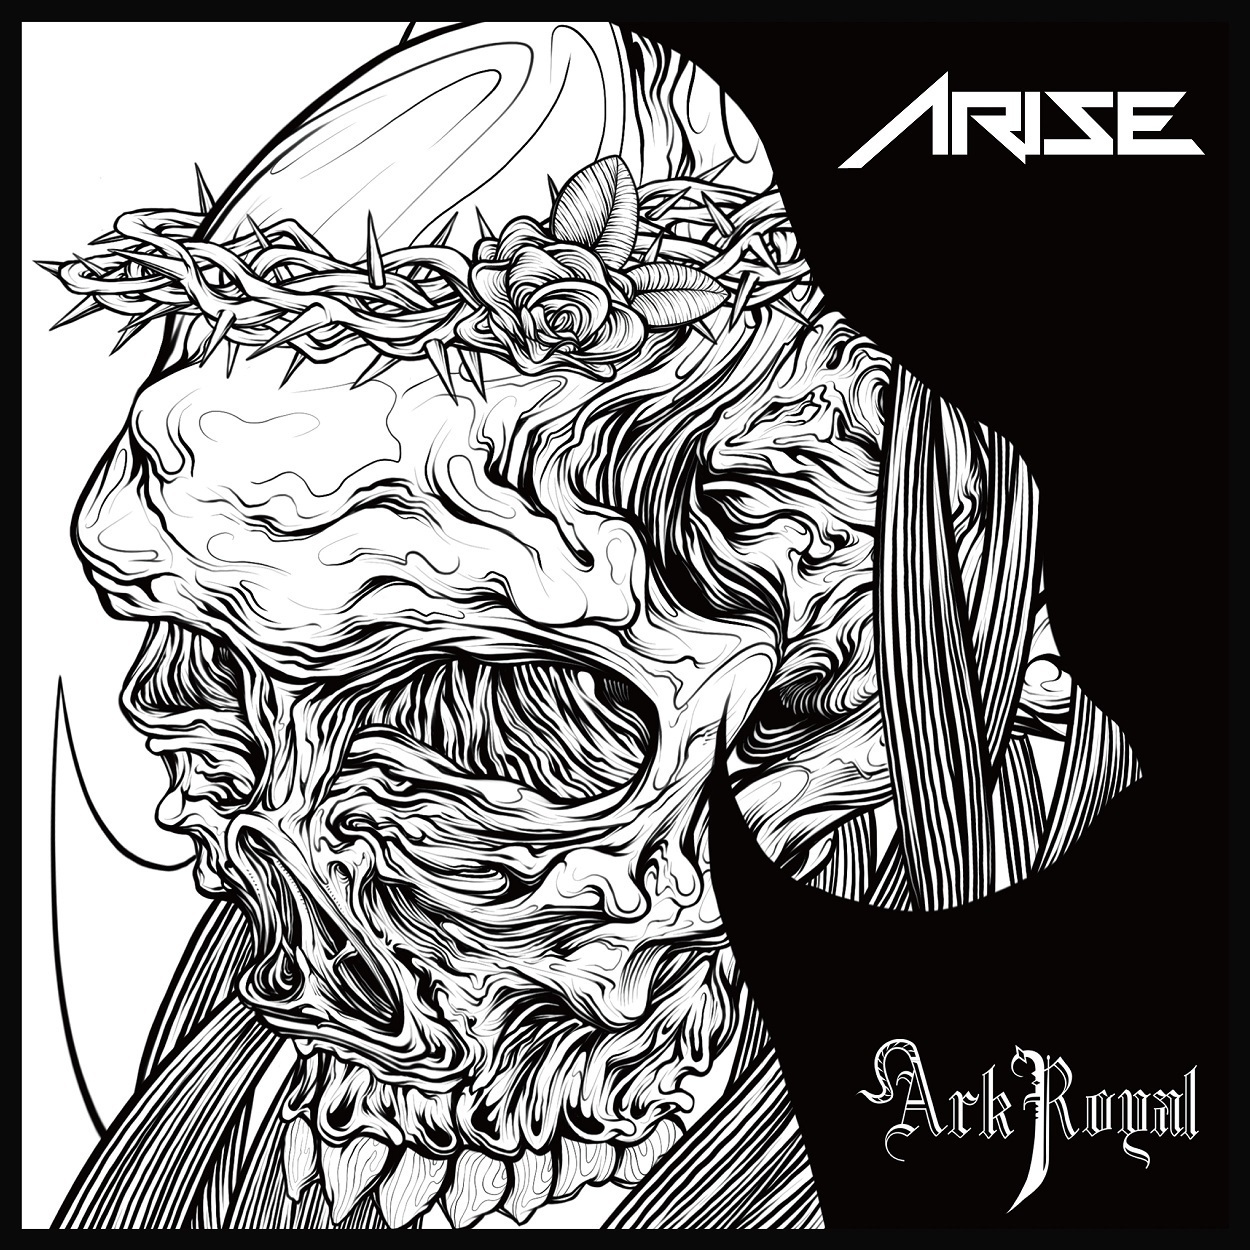 【30パーセントOFF】ArkRoyal デビュー・ミニアルバム『Arise』(CD)